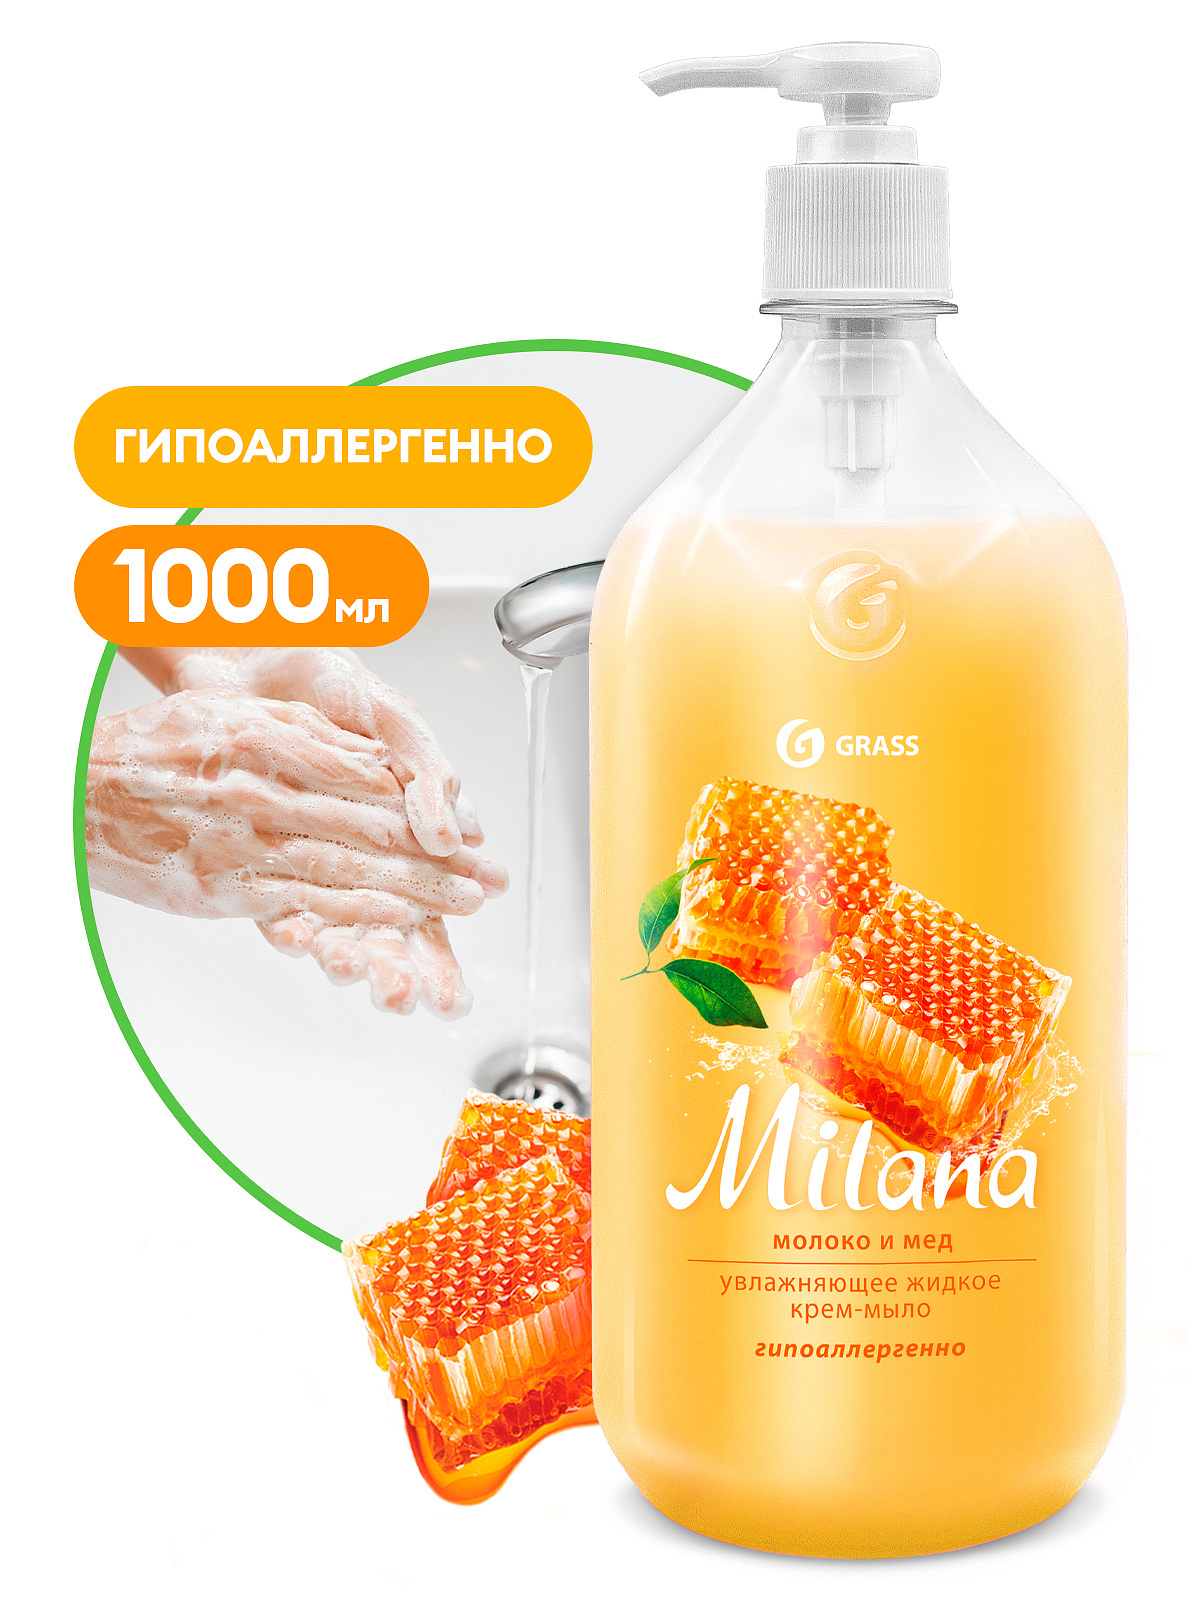 Жидкое крем-мыло Milana молоко и мед 1000 мл GraSS